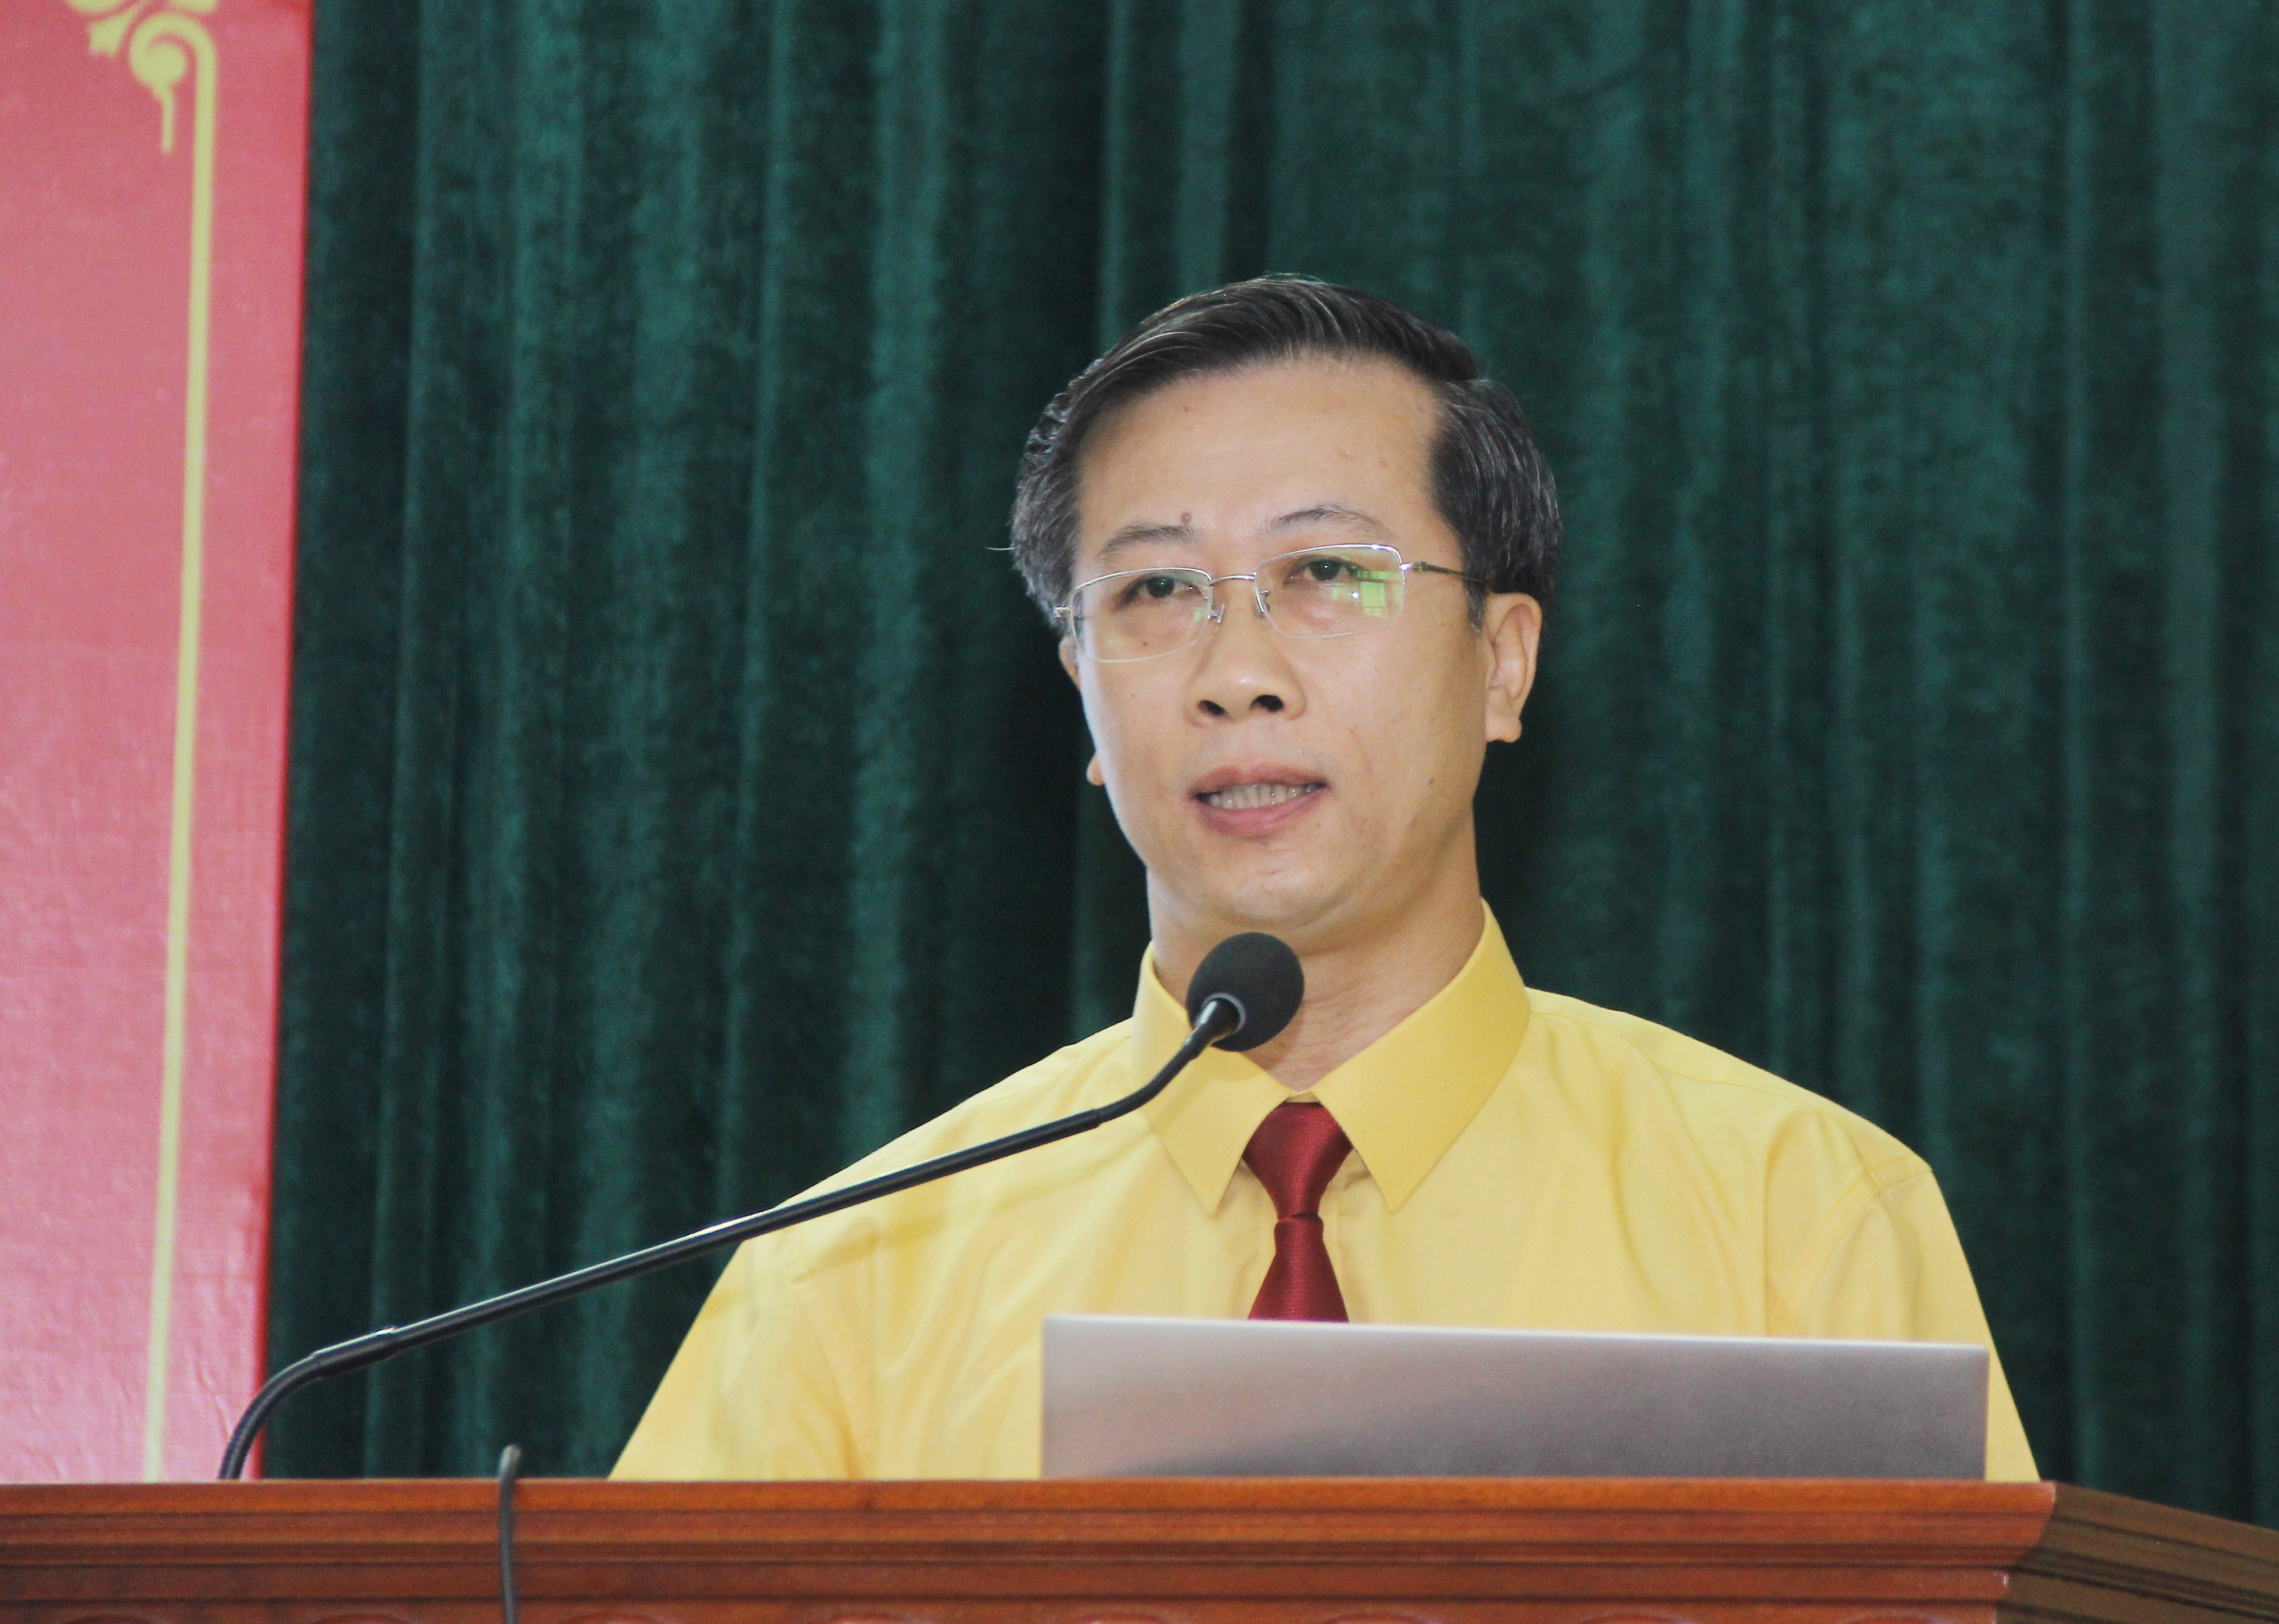 Đồng chí Nguyễn Đức Thành - Phó Bí thư Chi bộ trình bày báo cáo chính trị tại đại hội. Ảnh: Mai Hoa